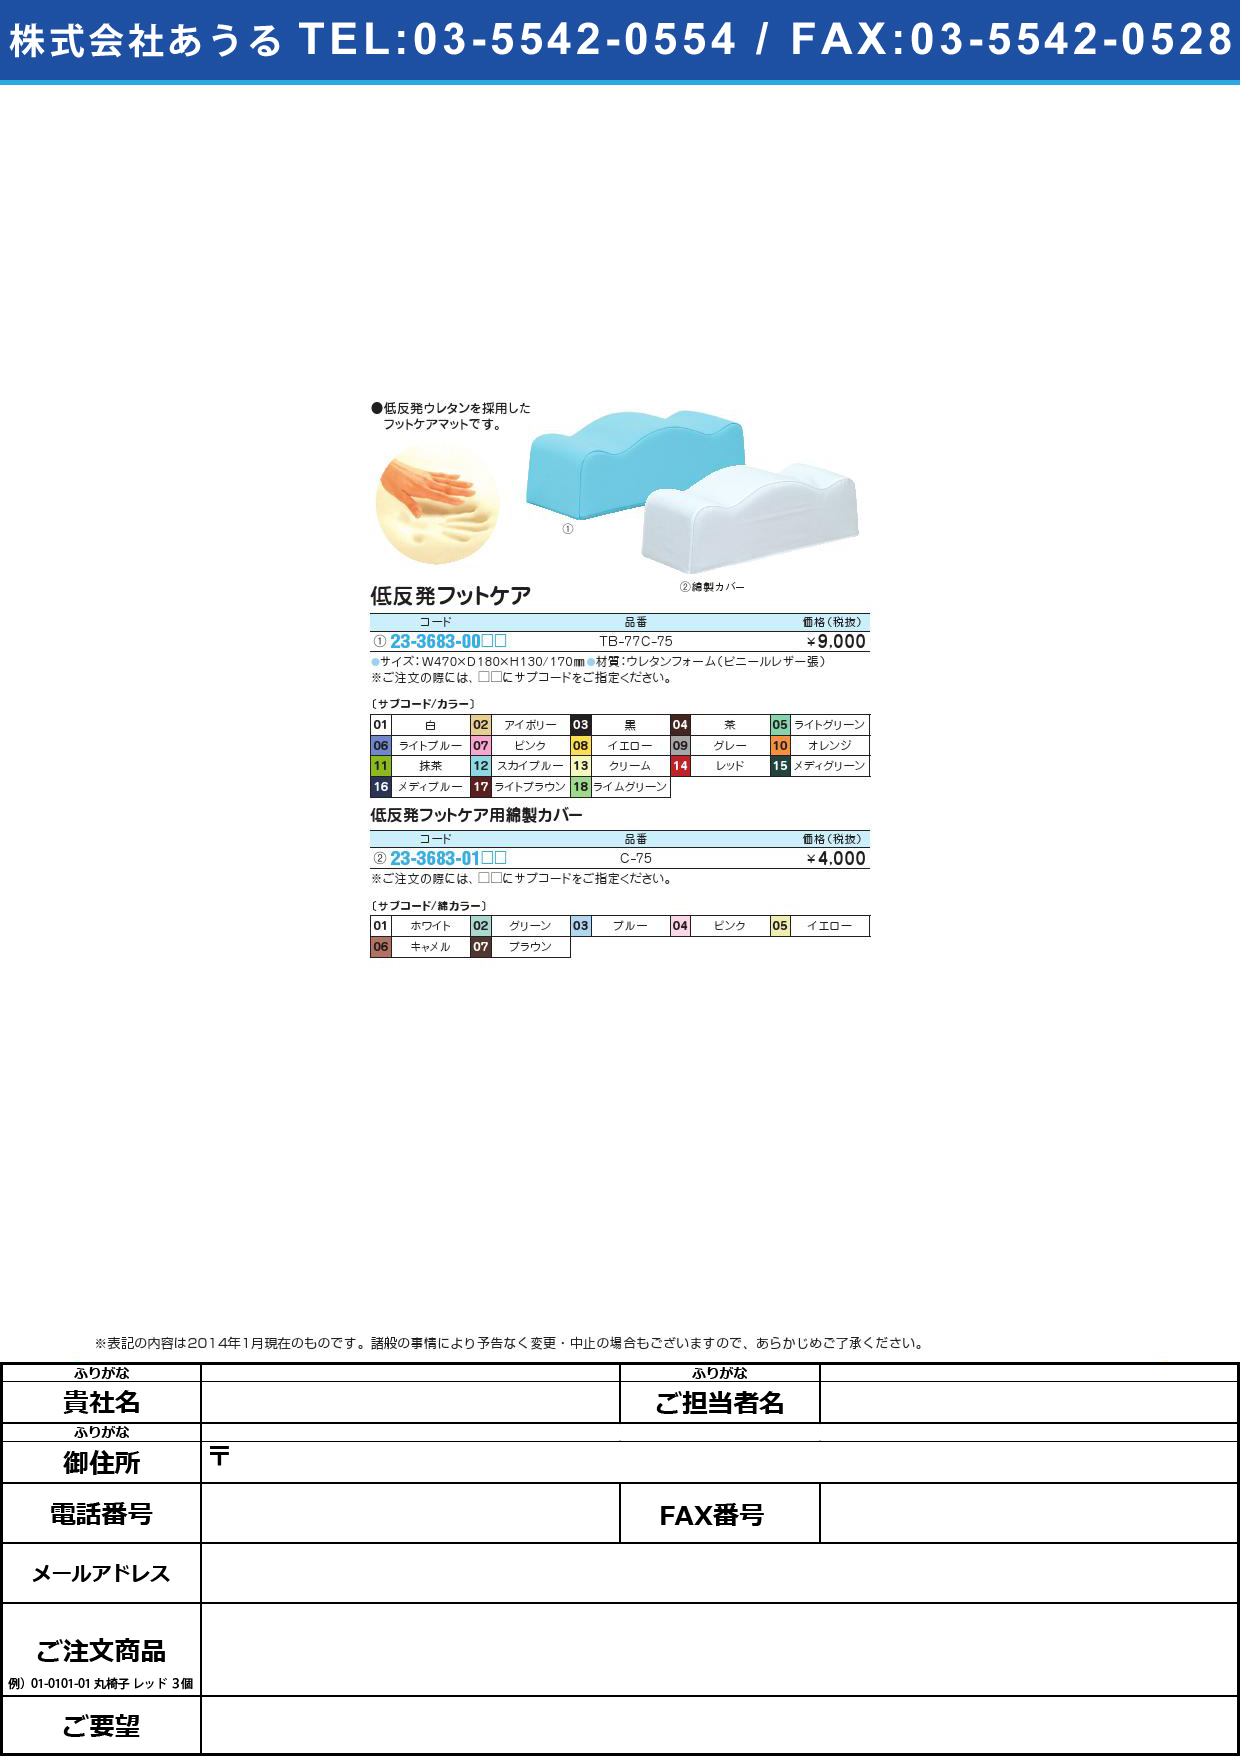 低反発フットケア用綿製カバー ﾃｲﾊﾝﾊﾟﾂﾌｯﾄｹｱﾒﾝｾｲｶﾊﾞｰ C-75【1枚単位】(23-3683-01)